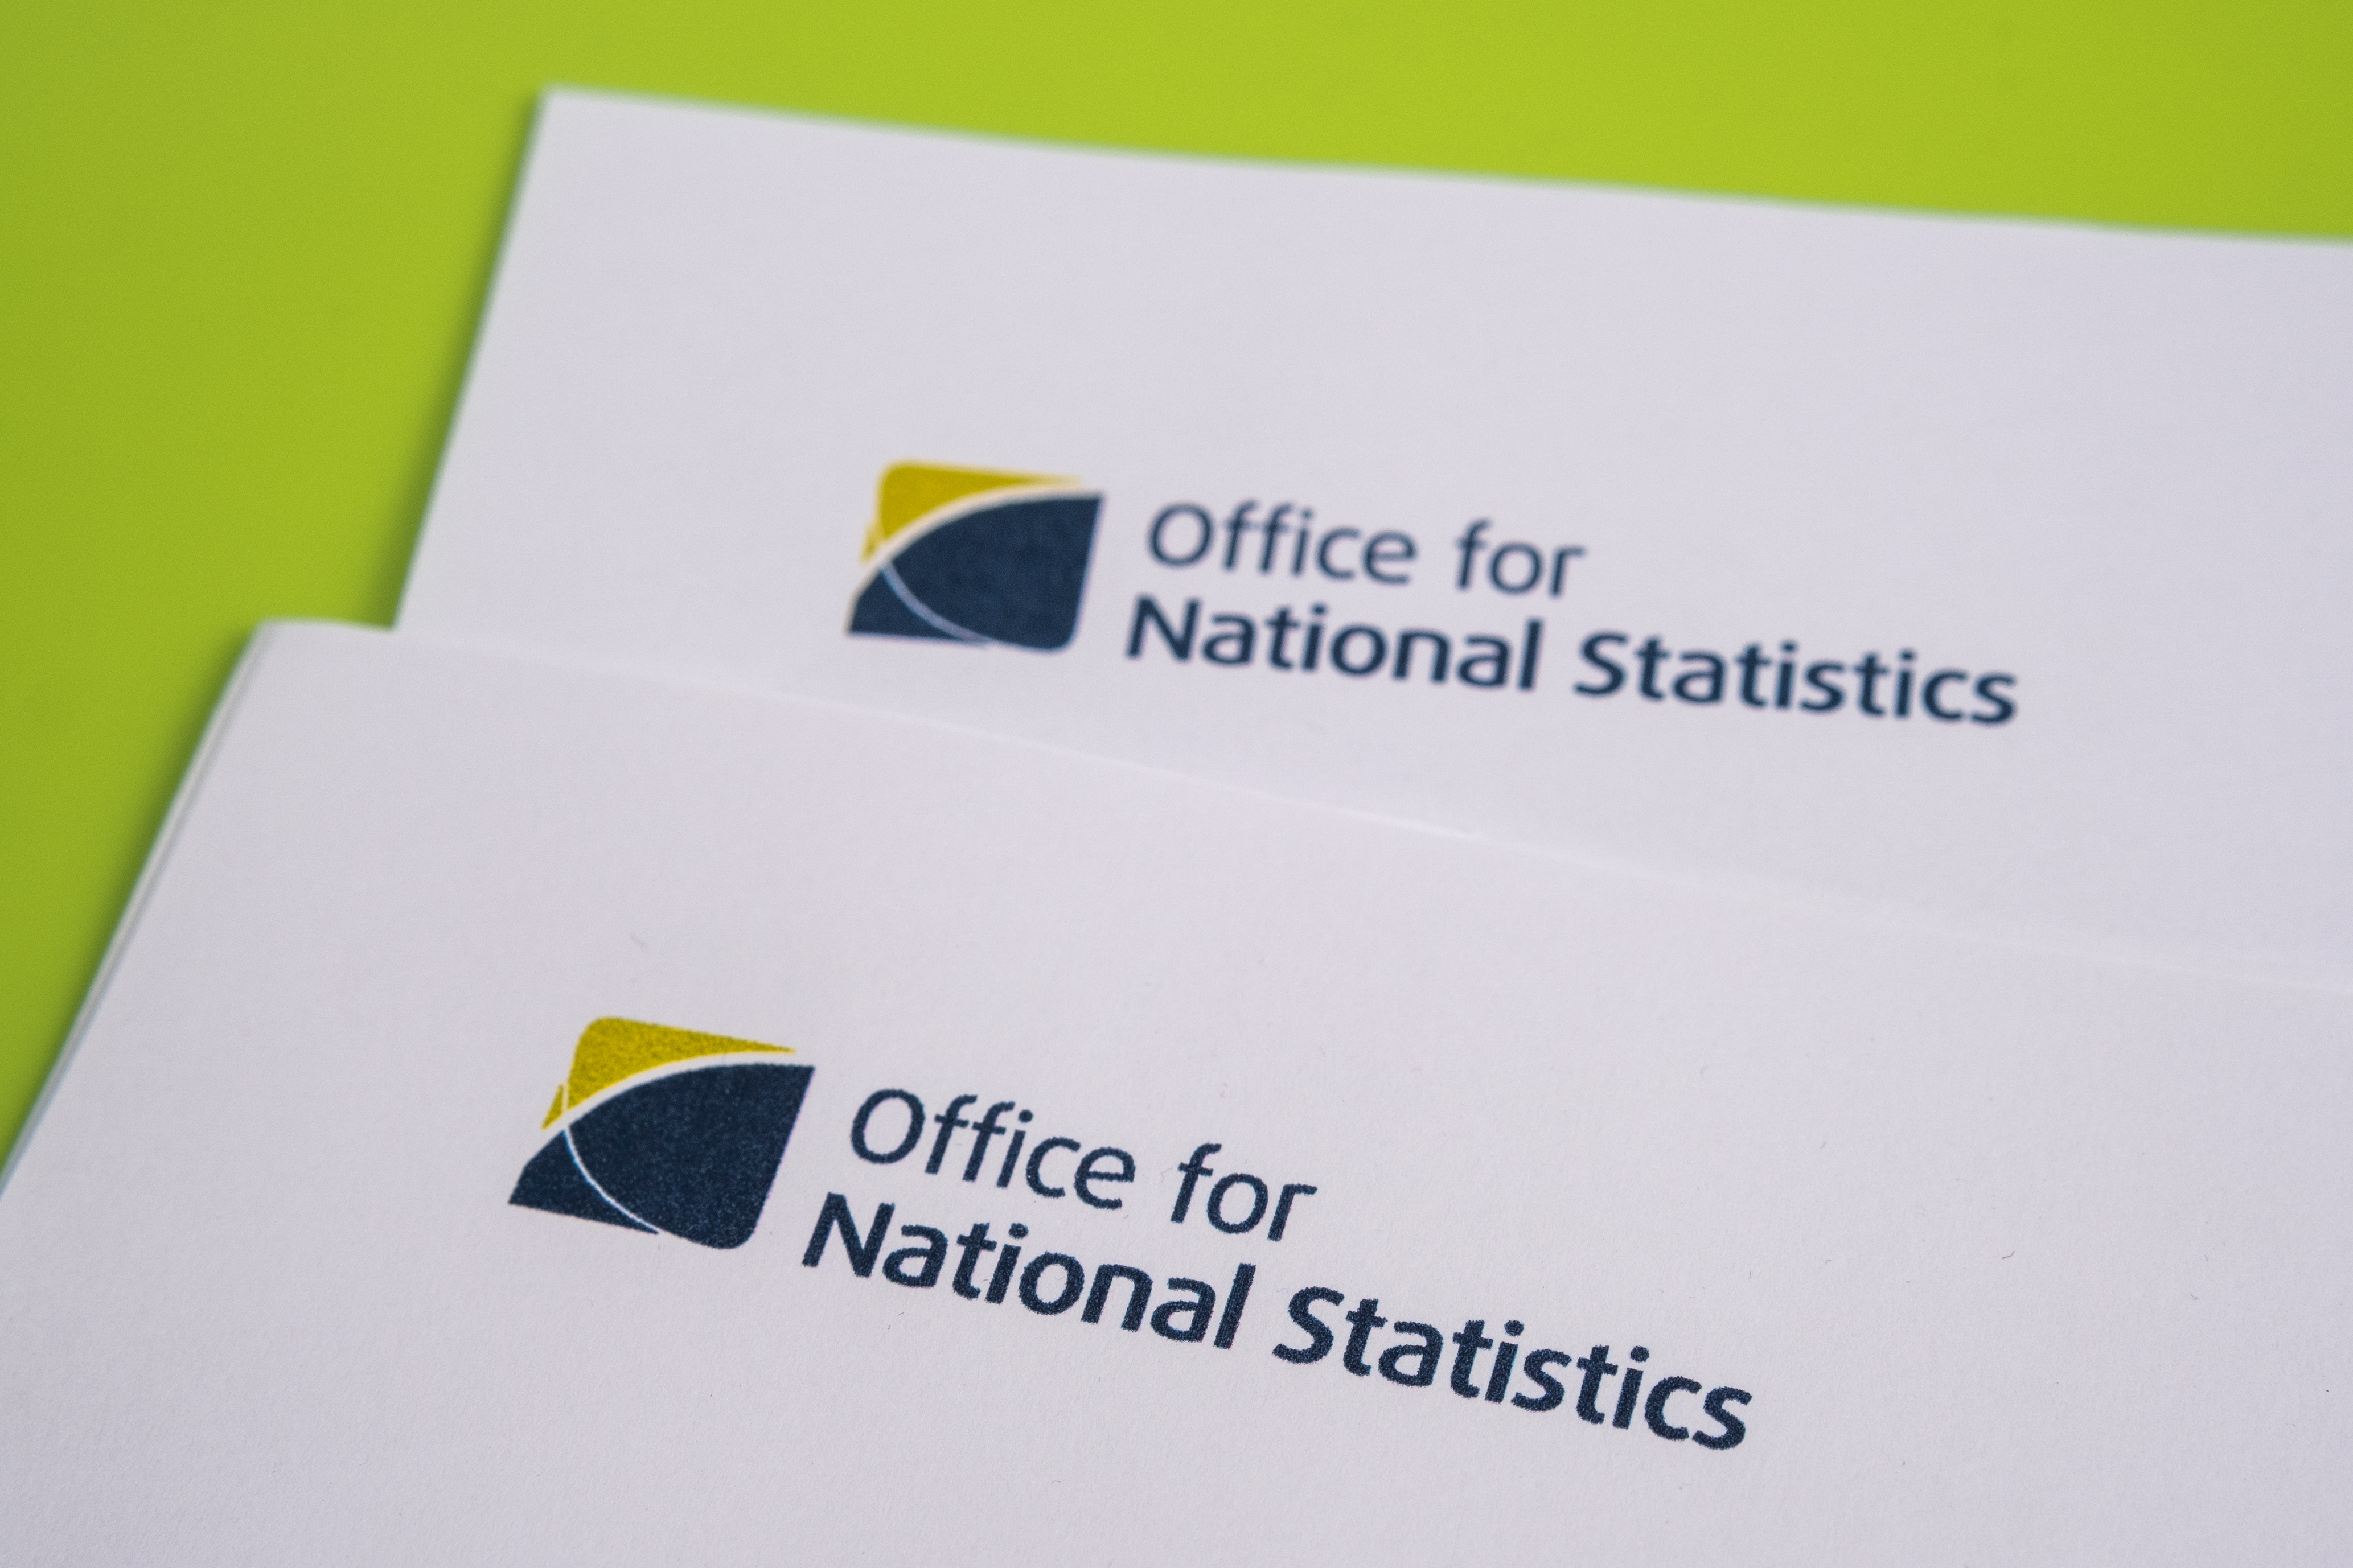 Office for National Statistics logo on letterhead